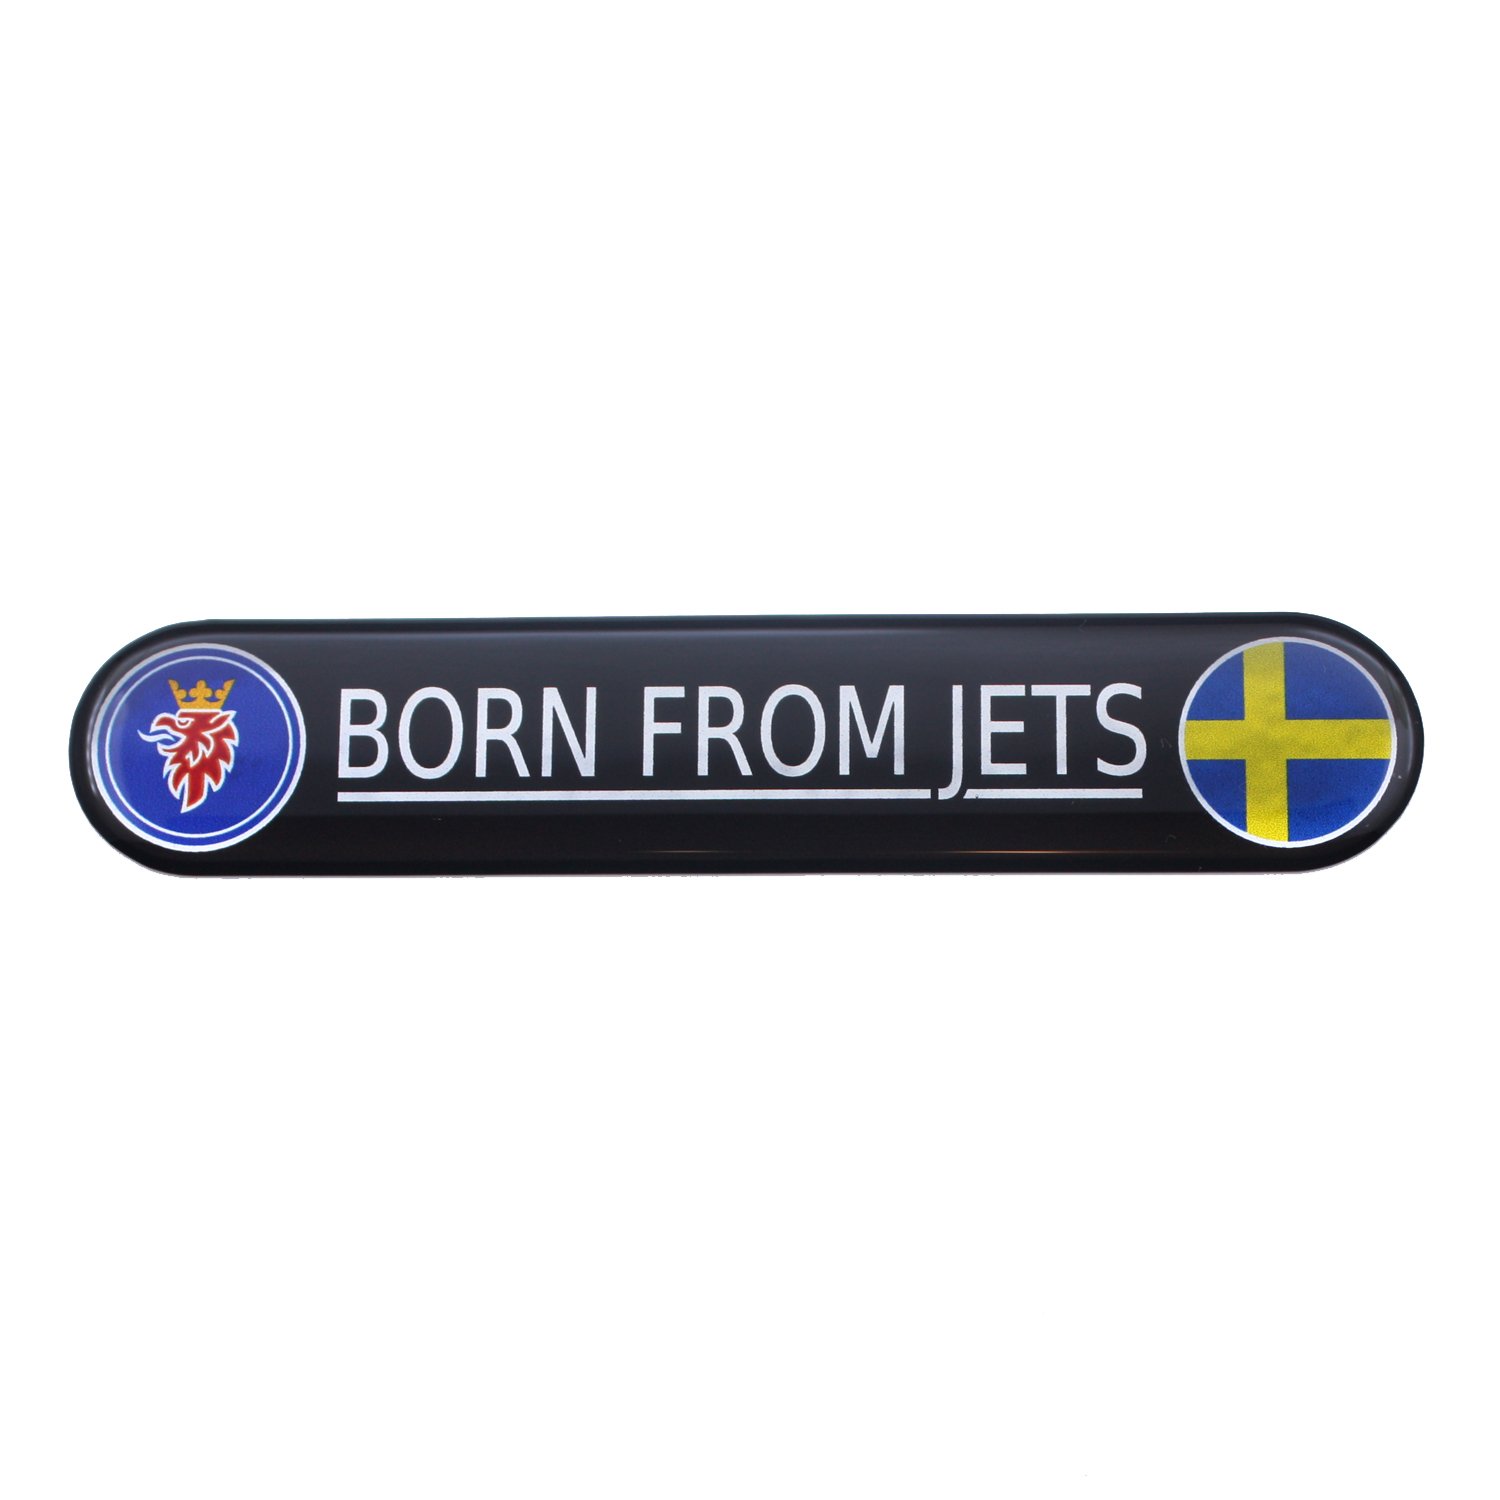 SAAB"BORN From JETS"-Emblem, farbig und Chrom, mit Griffin in Blau und schwedischer Flagge, gewölbt, 3D-Aufkleber, selbstklebende Rückseite von EU-Decals